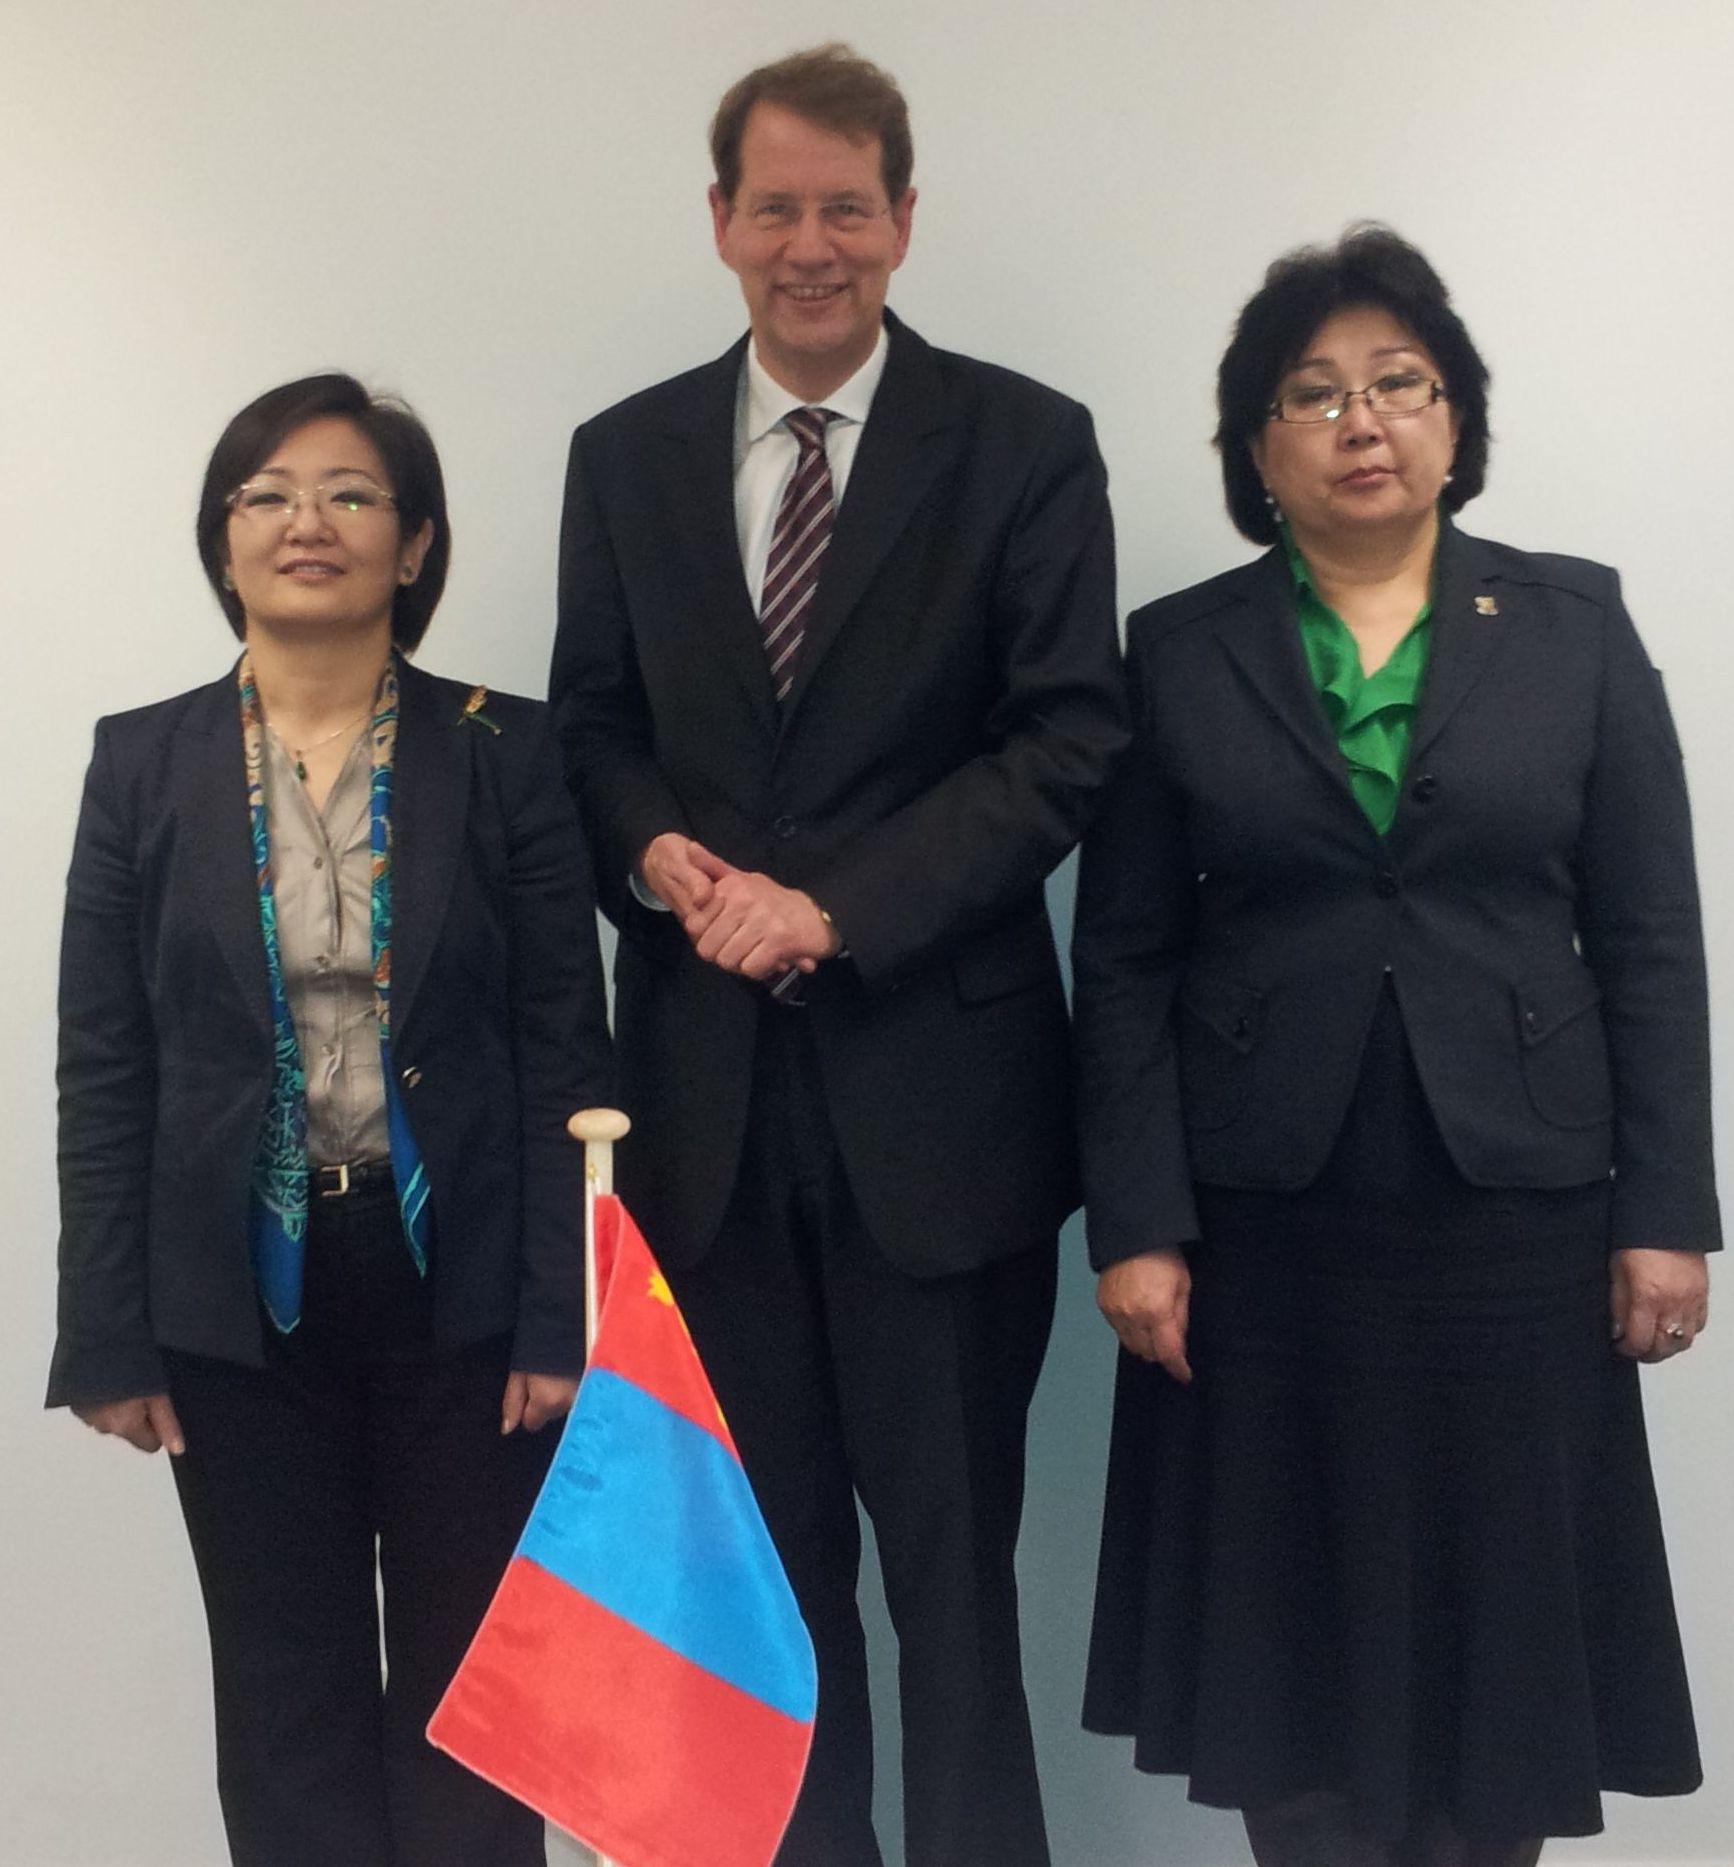 Gespräch über das deutsche Petitionswesen: Gero Storjohann MdB trifft Parlamentarier aus der Mongolei - Bild